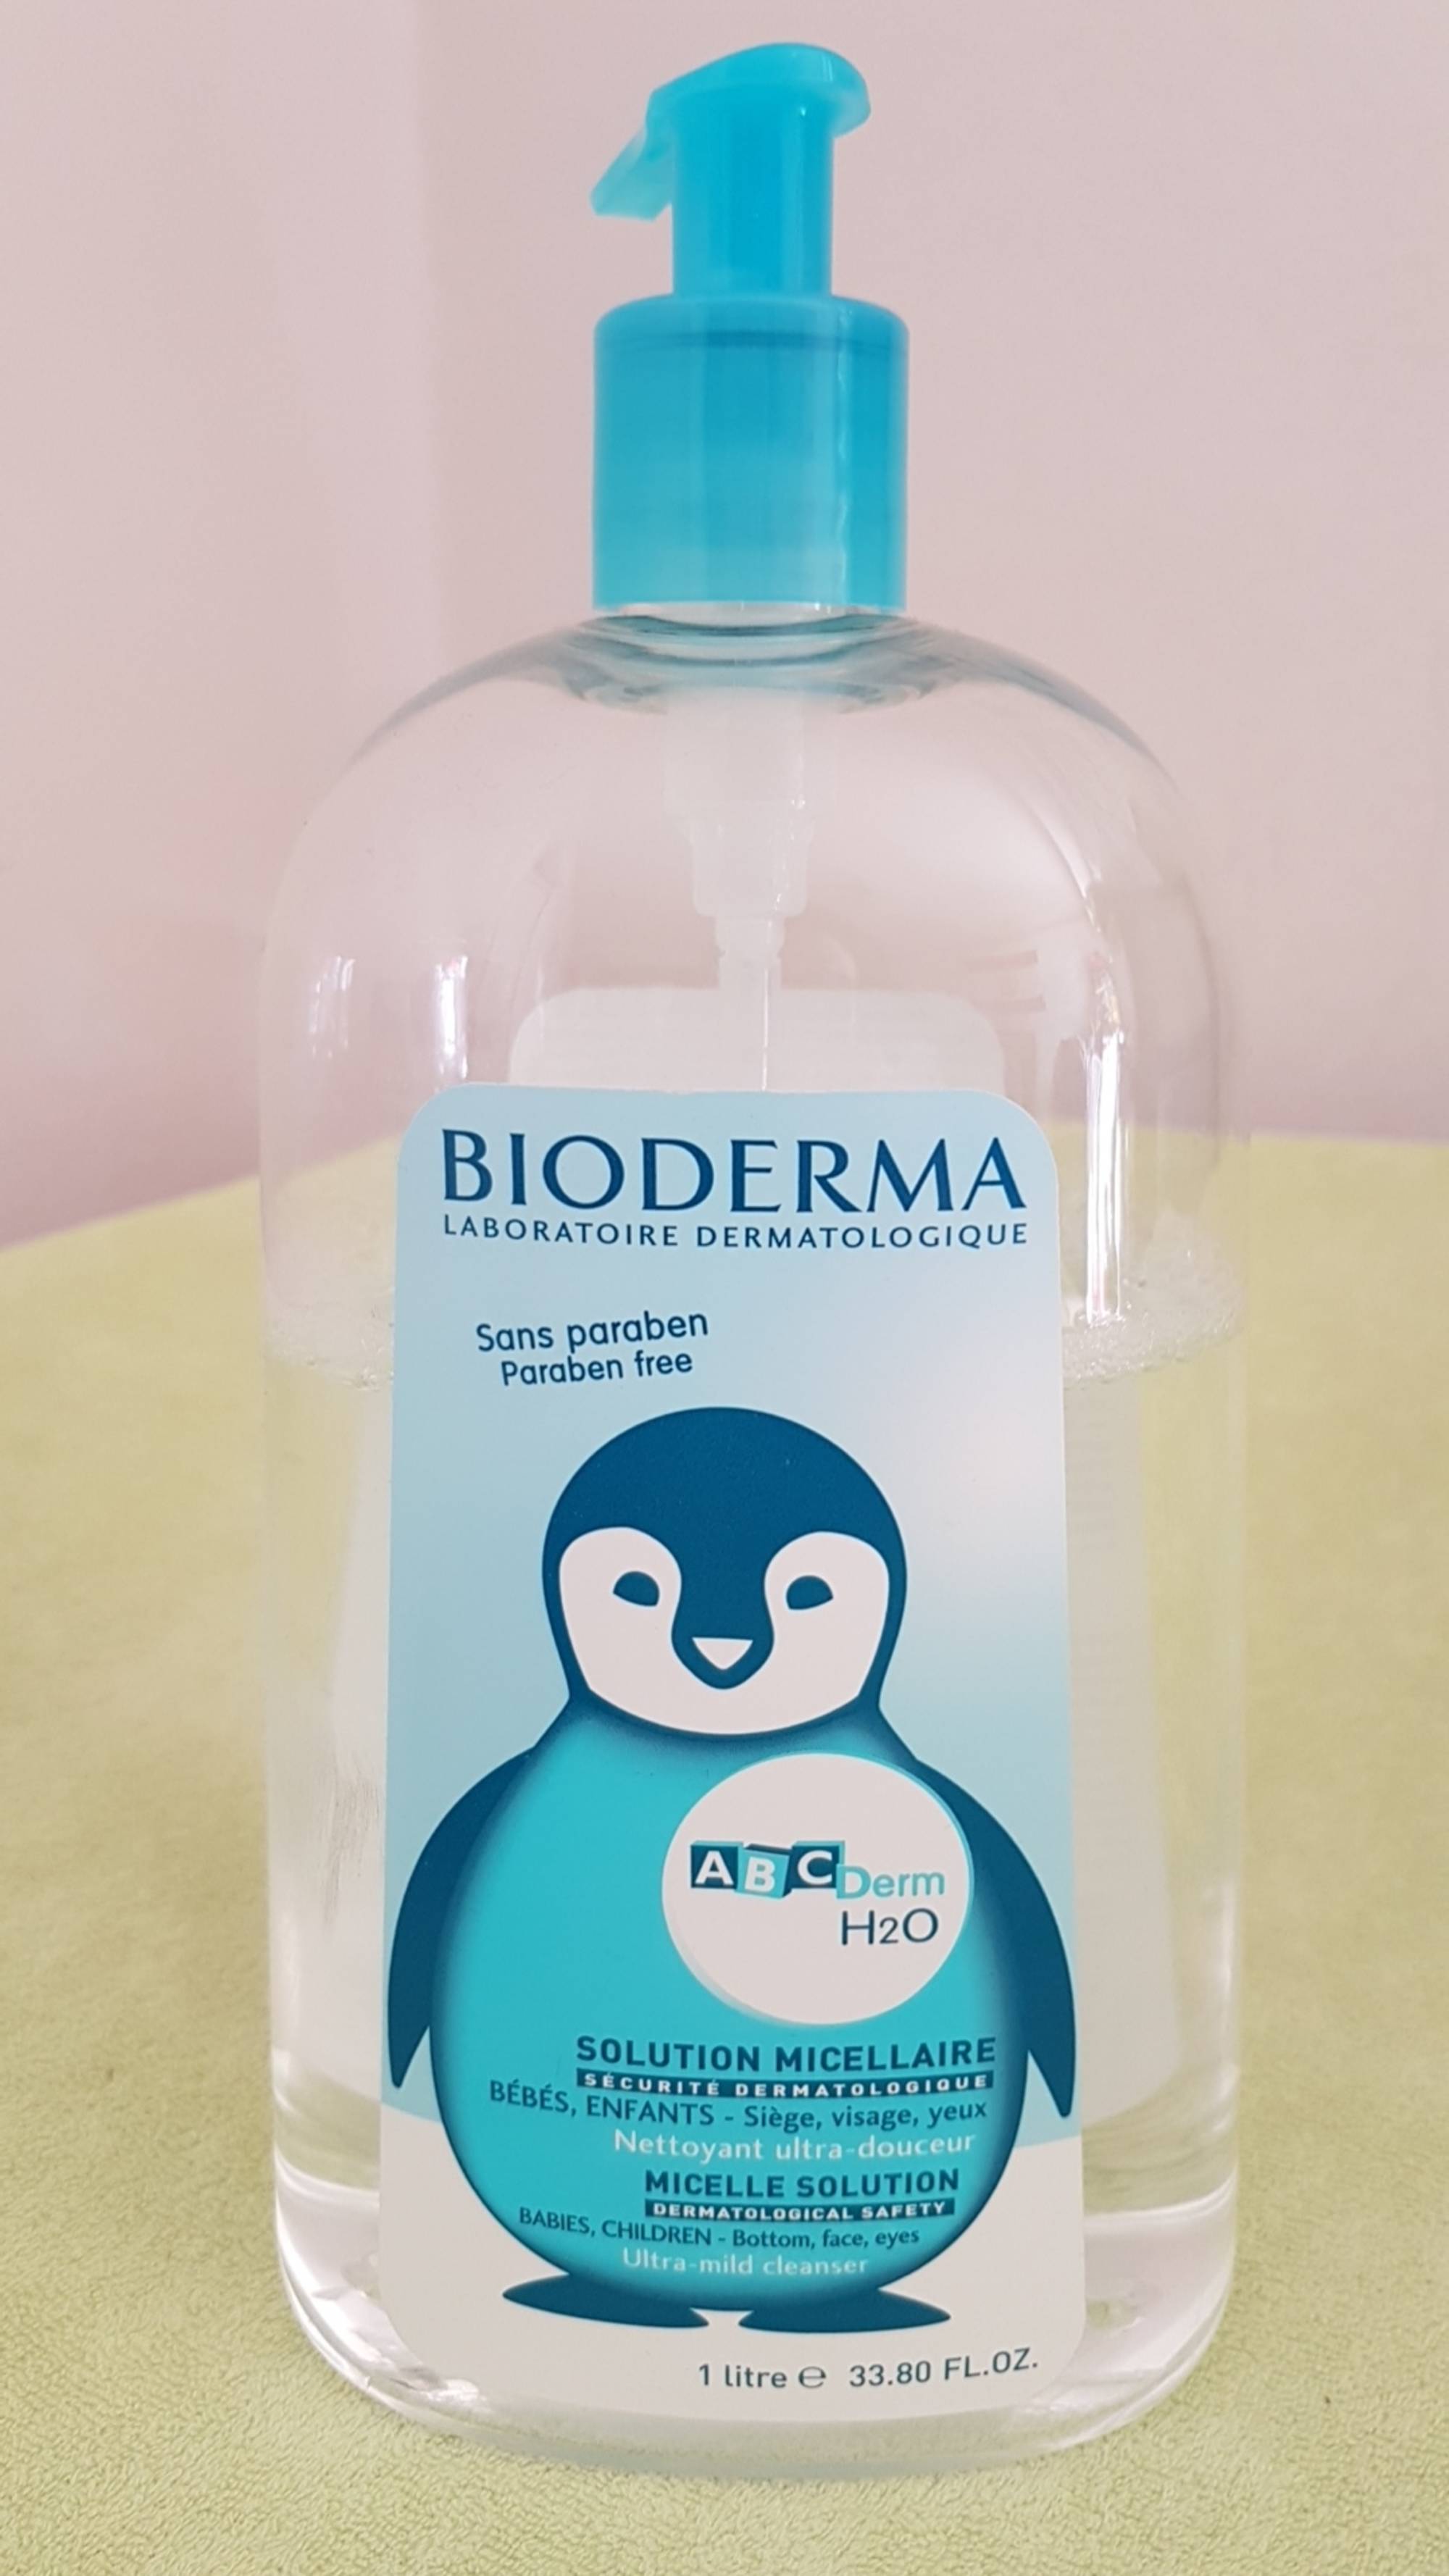 BIODERMA - ABC Derm H20 - Solution micellaire bébés, enfants - Nettoyant ultra-douceur